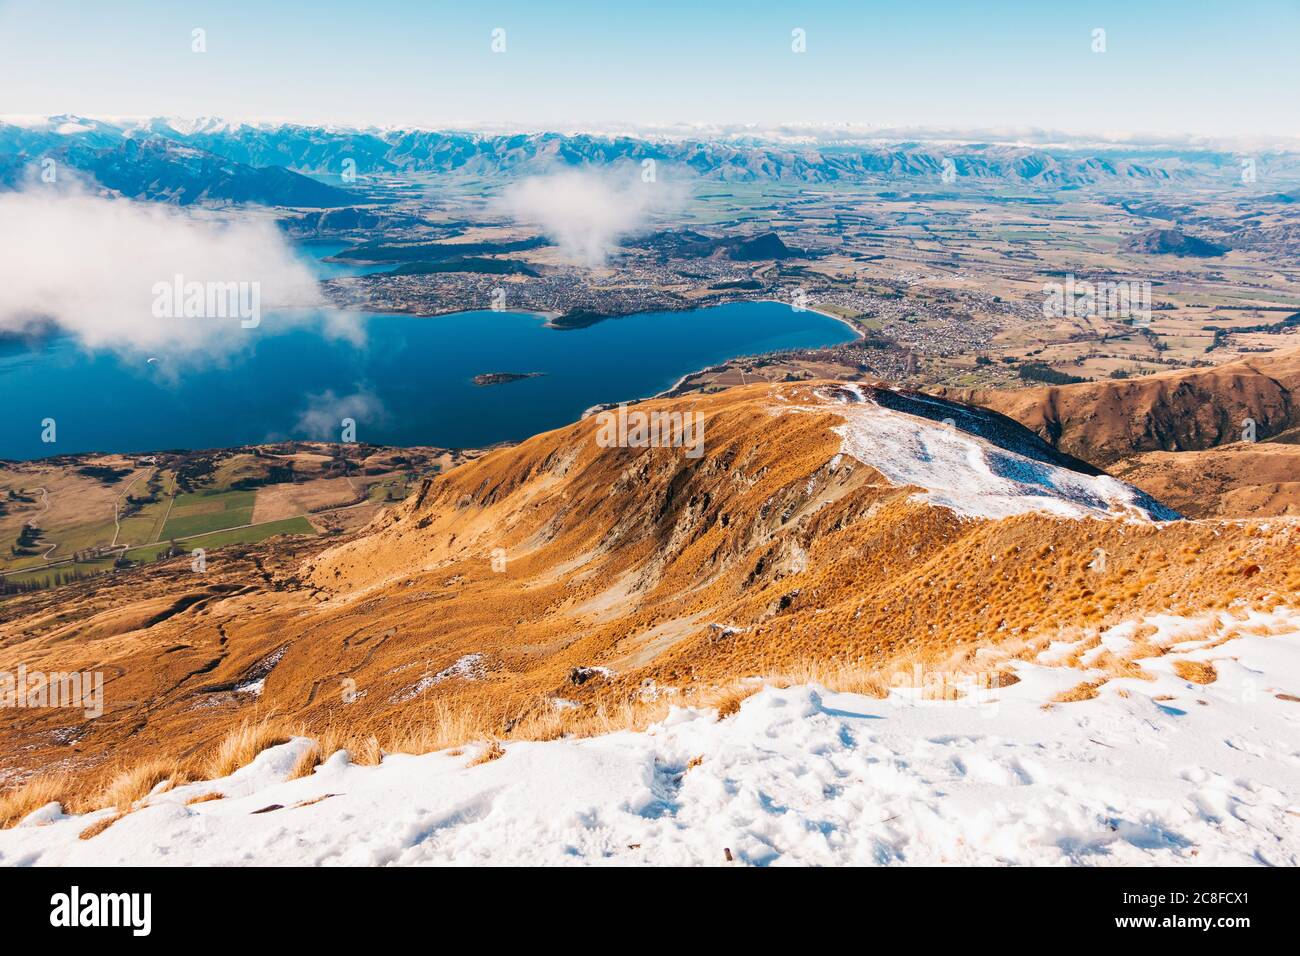 Le canton de Wanaka et le lac Wanaka, vus d'un pic enneigé de Roys, Nouvelle-Zélande Banque D'Images